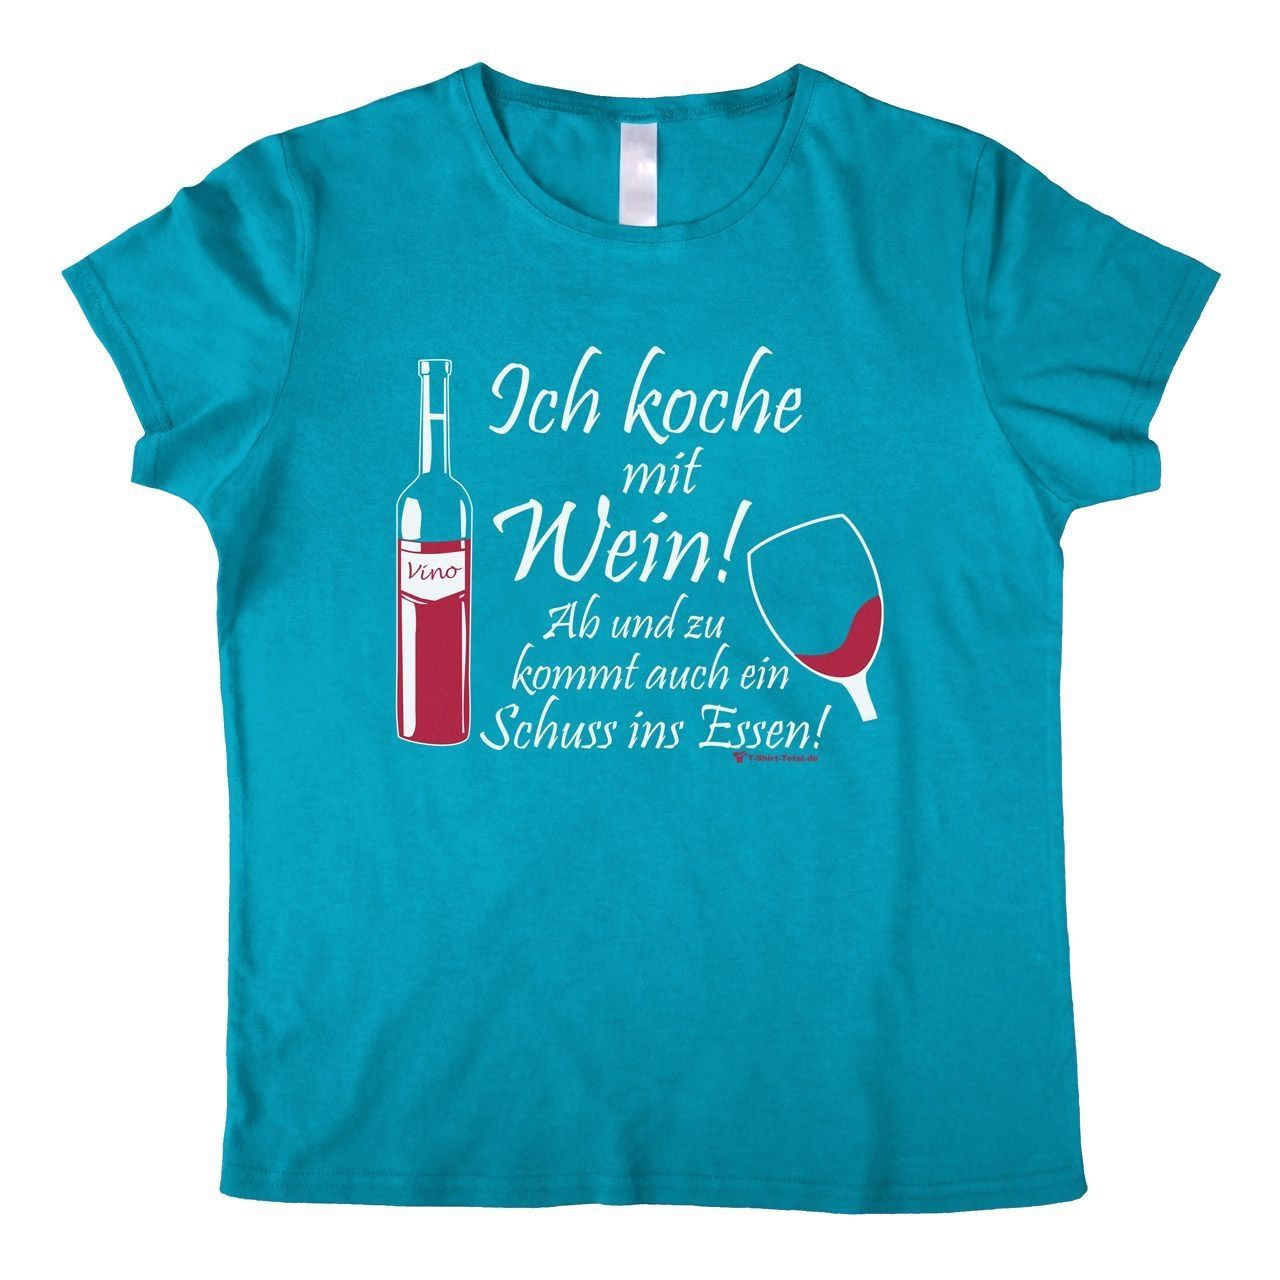 Koche mit Wein Woman T-Shirt türkis Large